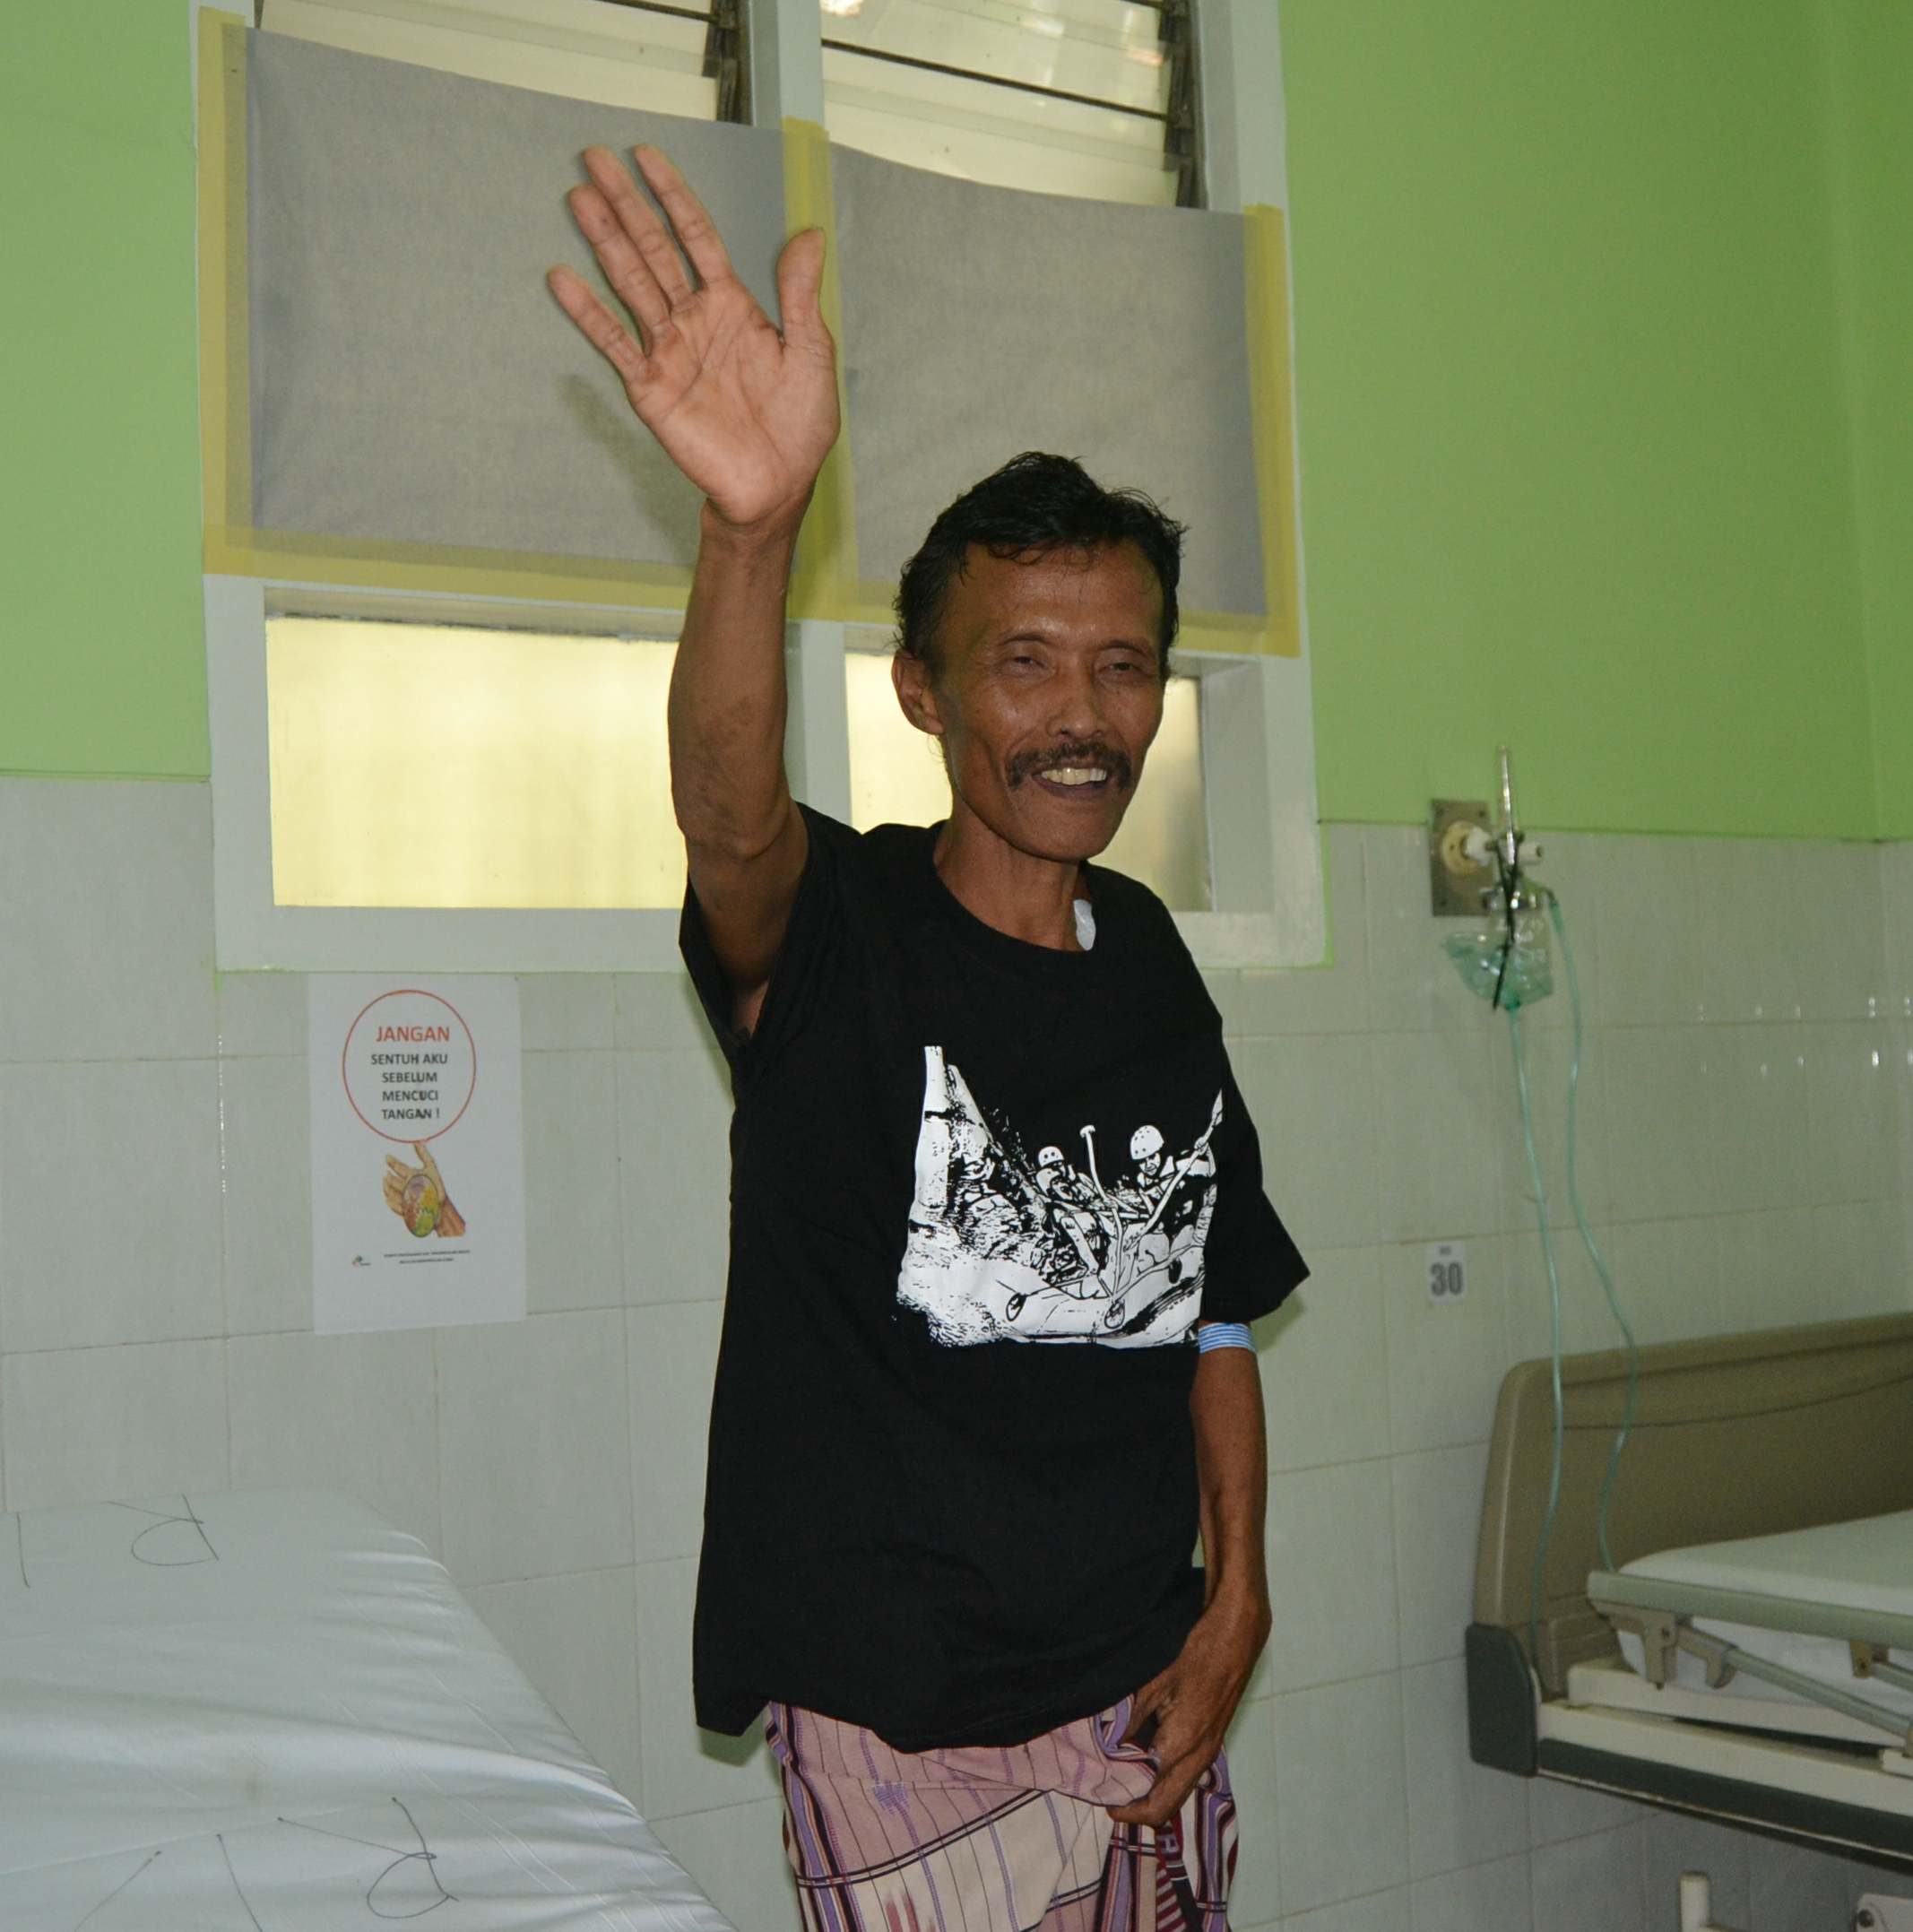 TETAP SEMANGAT. Tosan menyapa wartawan di ruang rawat inap di rumah sakit di Malang, 12 Oktober 2015. Foto oleh Dyah Ayu Pitaloka/Rappler  